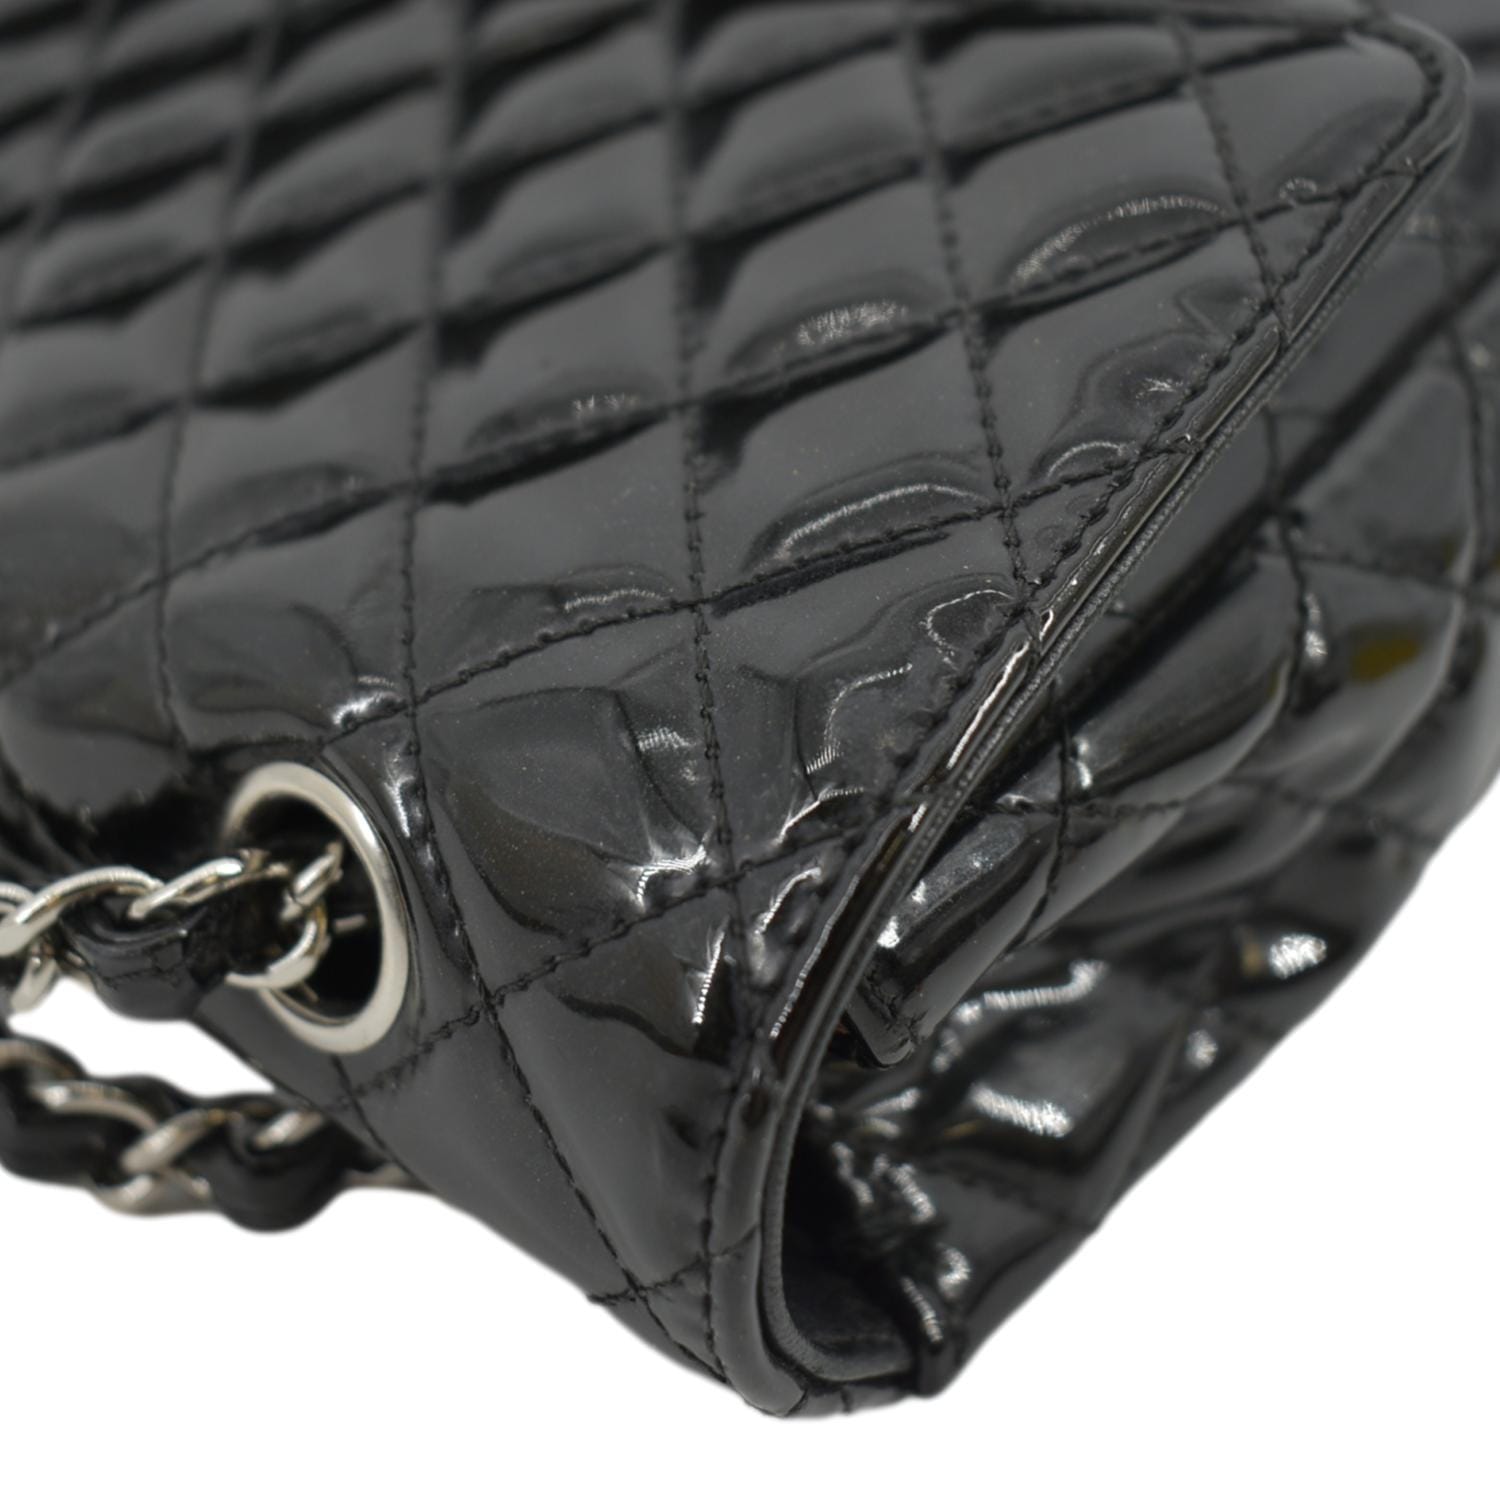 Chanel Medium Secret Label Patent Leather Flap Bag (SHG-34789